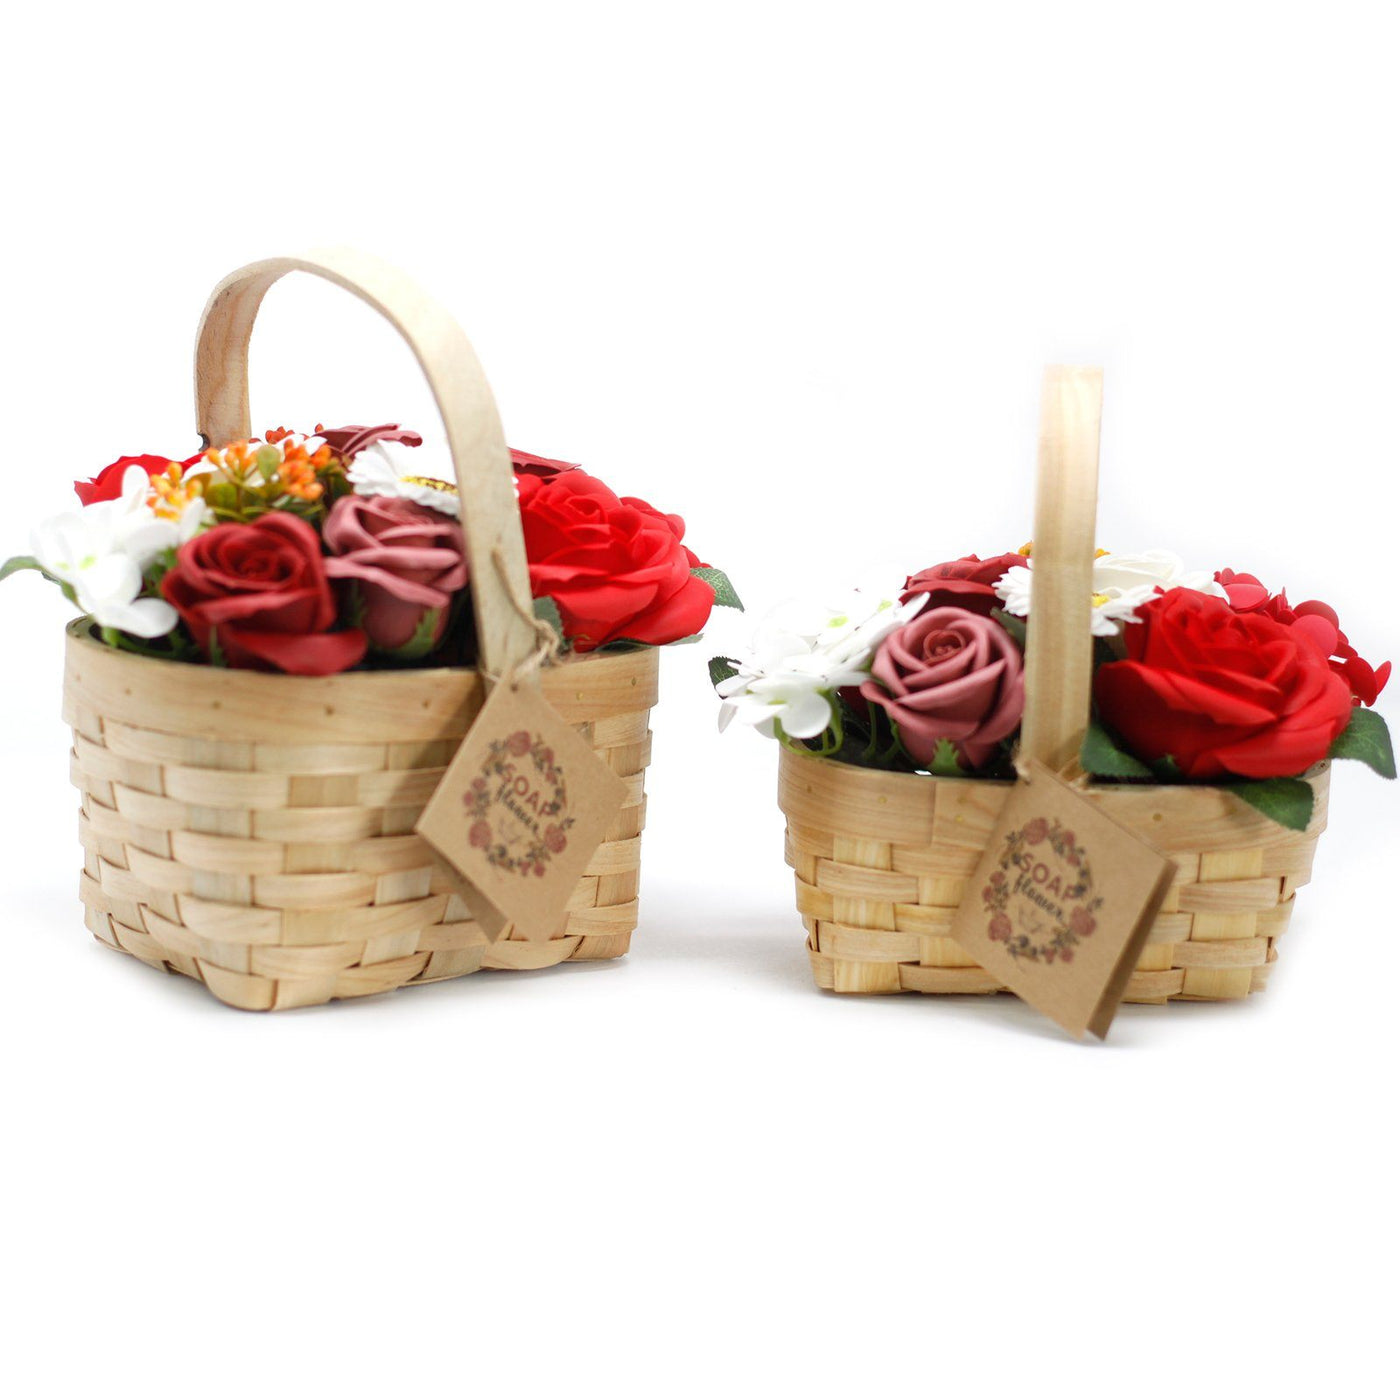 Medium Red Fragranced Body Gift Soap Flower Bouquet in Wicker Basket.